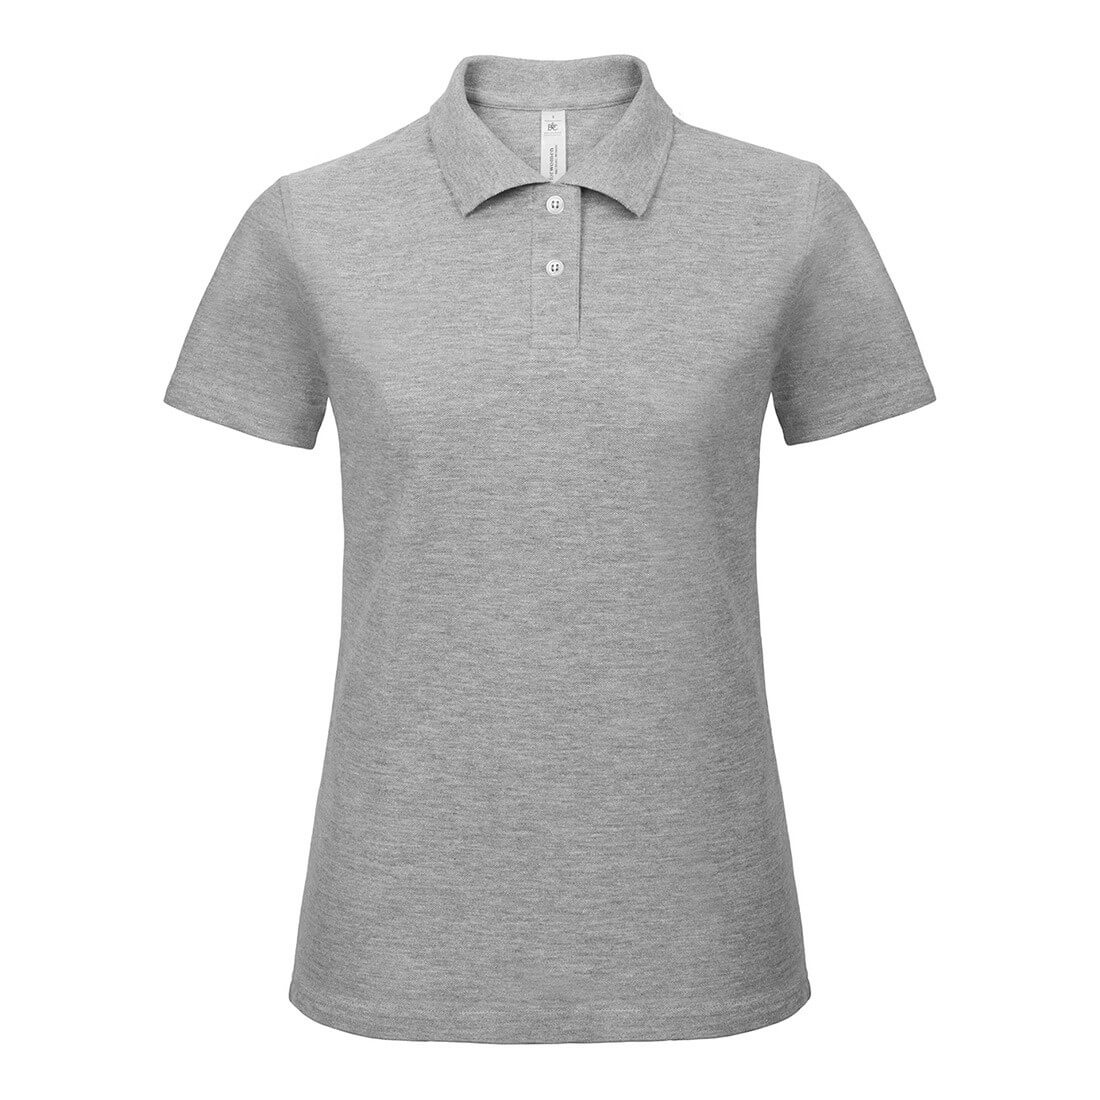 Women Piqué Polo Shirt - Les vêtements de protection